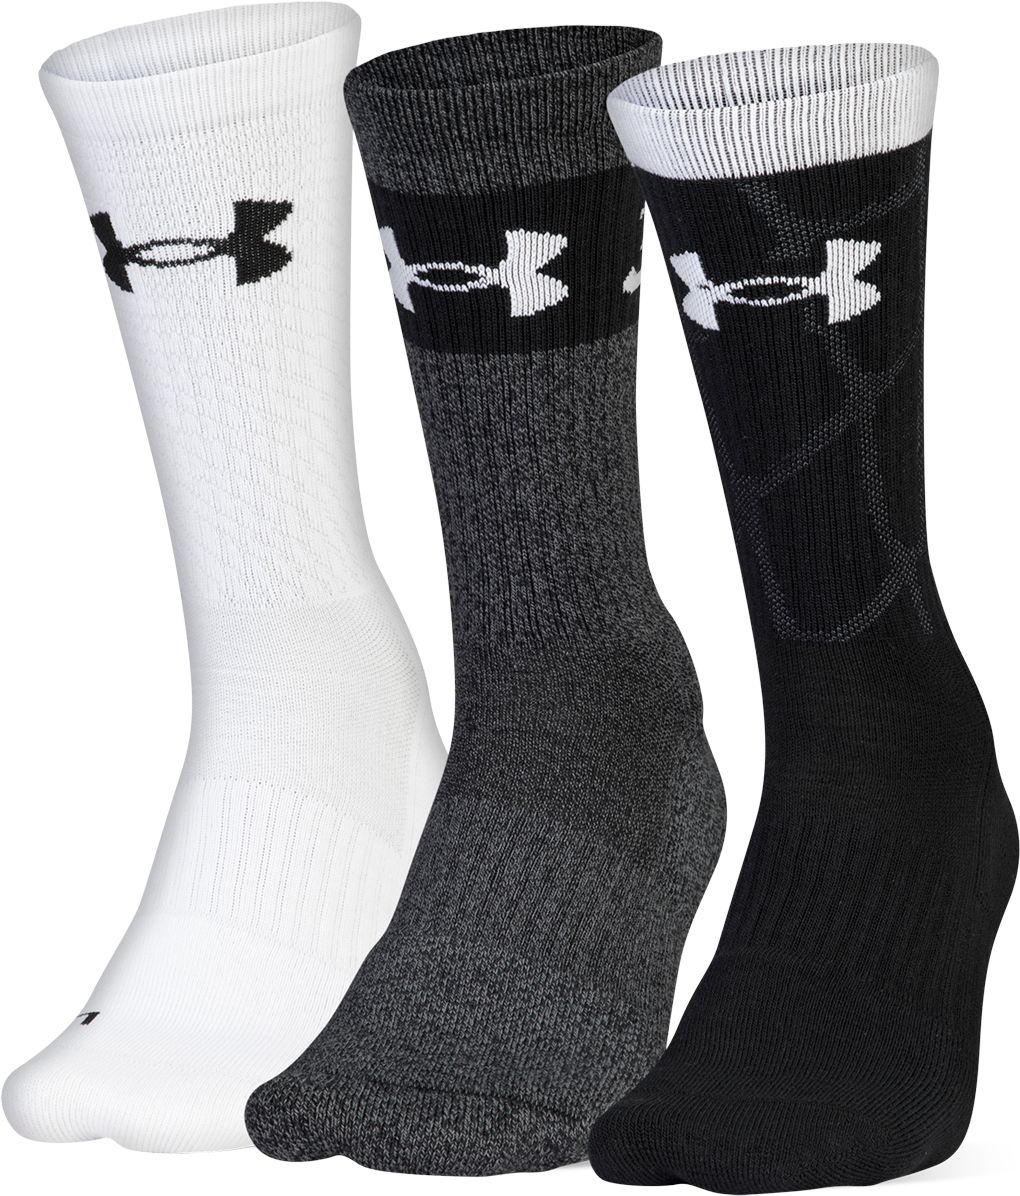 foot locker basketball socks